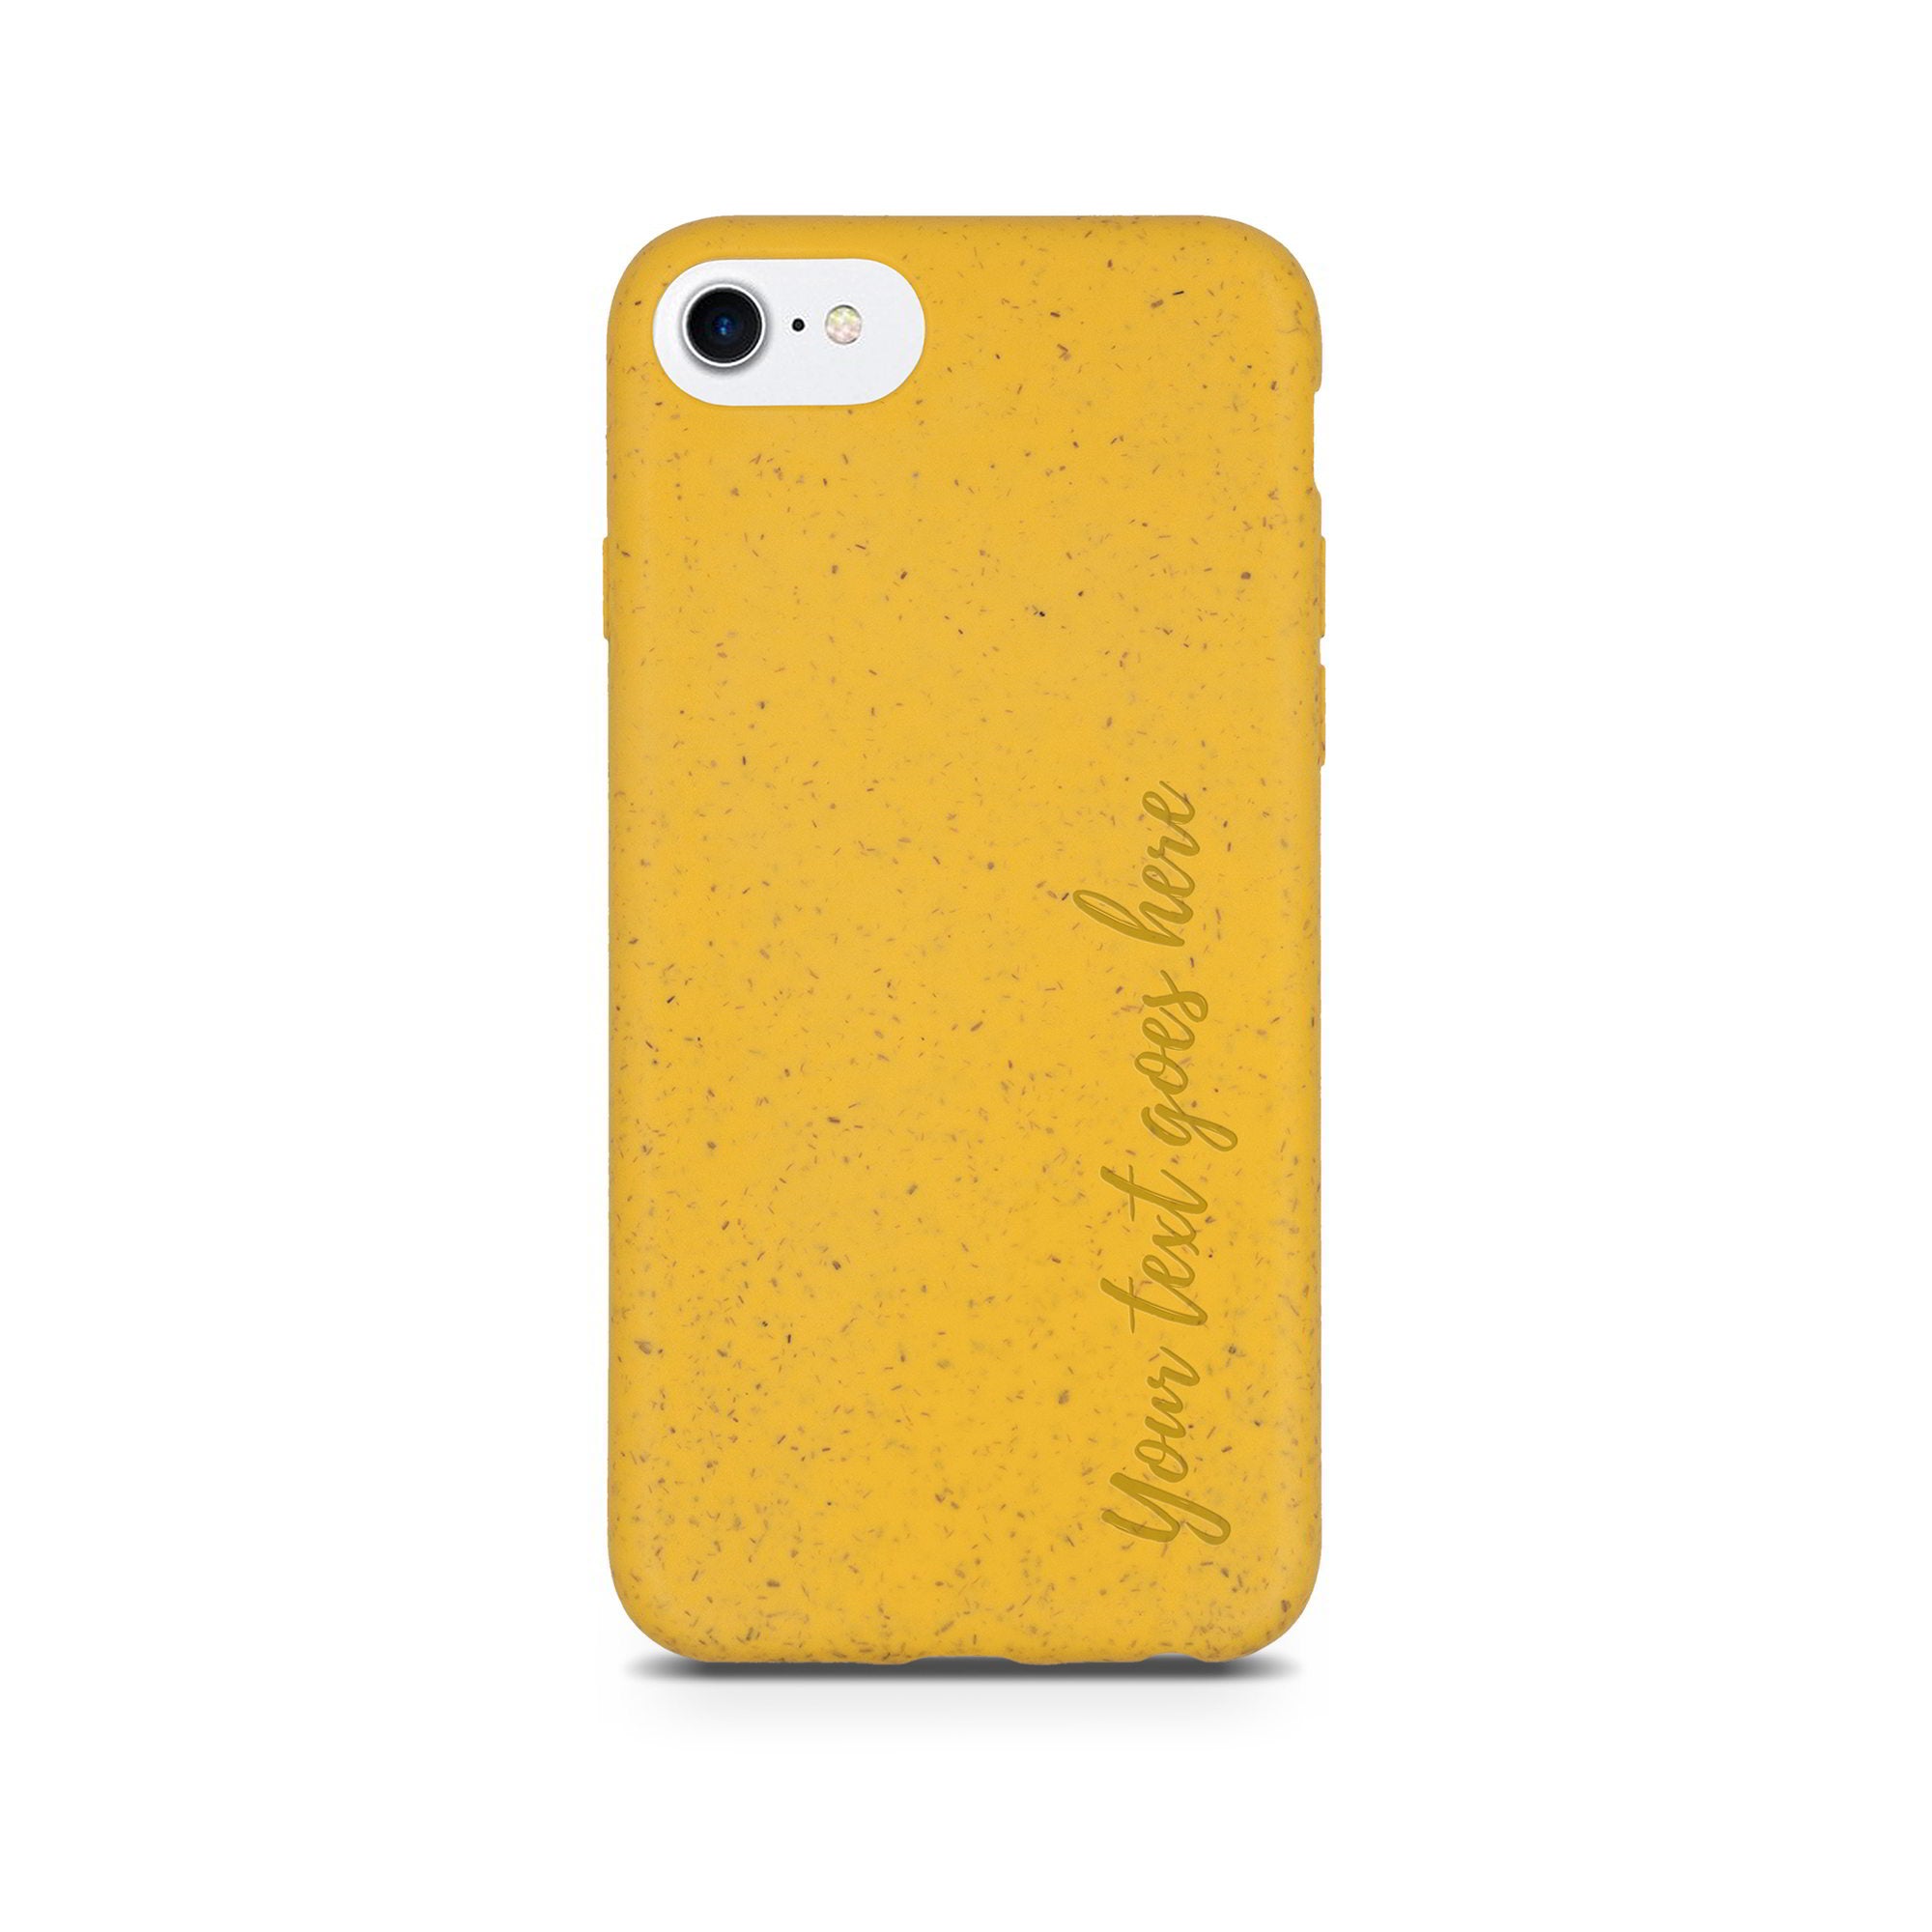 Carcasa Amarilla con Texto Personalizado Vertical para iPhone SE